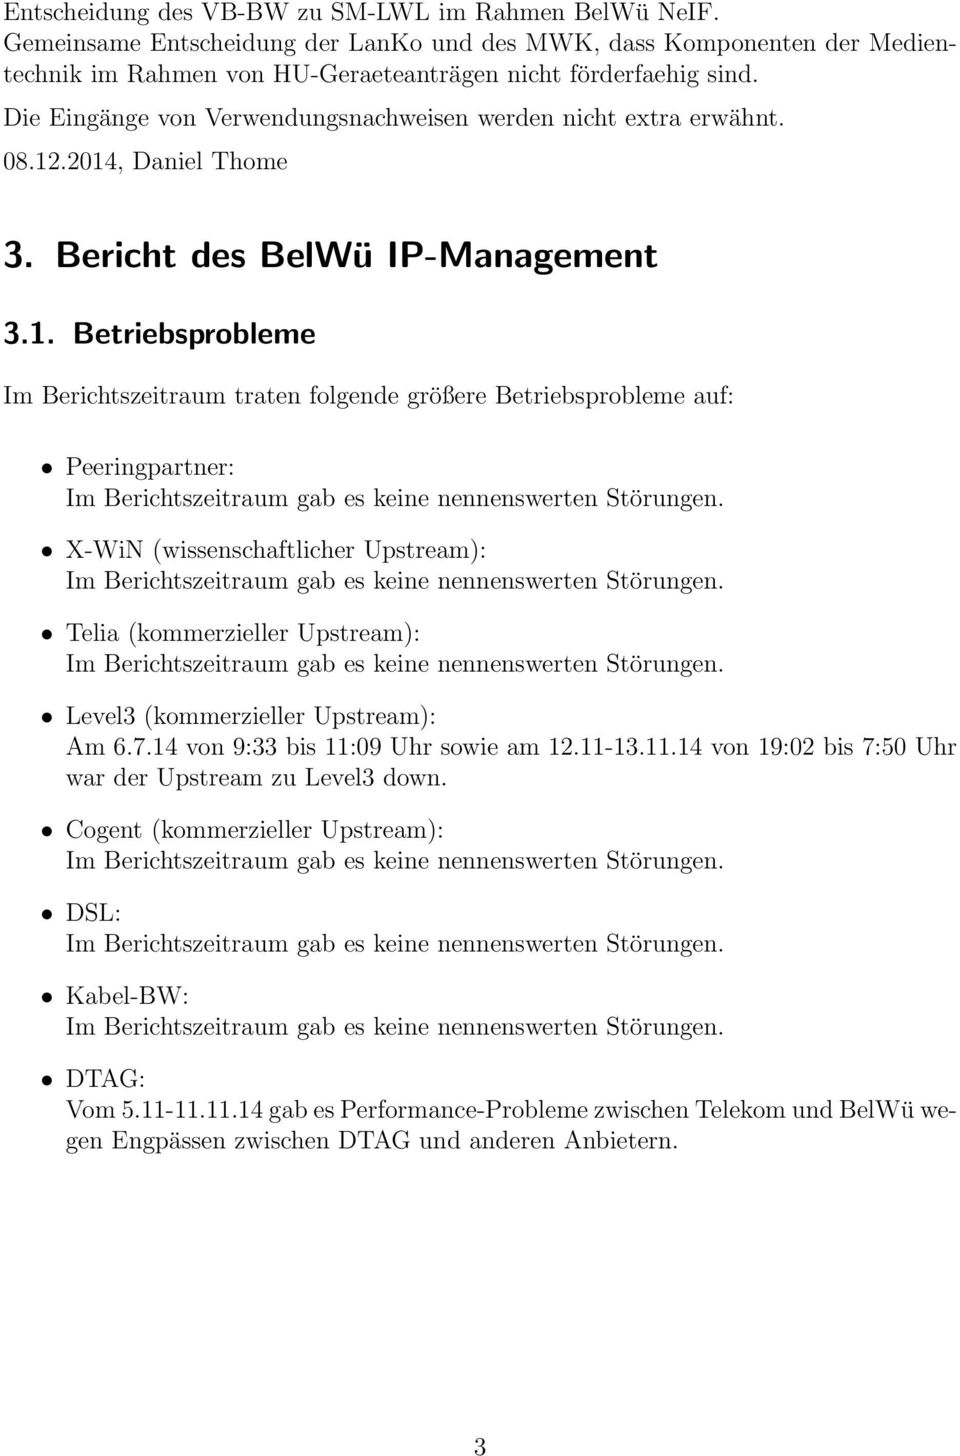 .2014, Daniel Thome 3. Bericht des BelWü IP-Management 3.1. Betriebsprobleme Im Berichtszeitraum traten folgende größere Betriebsprobleme auf: Peeringpartner: Im Berichtszeitraum gab es keine nennenswerten Störungen.